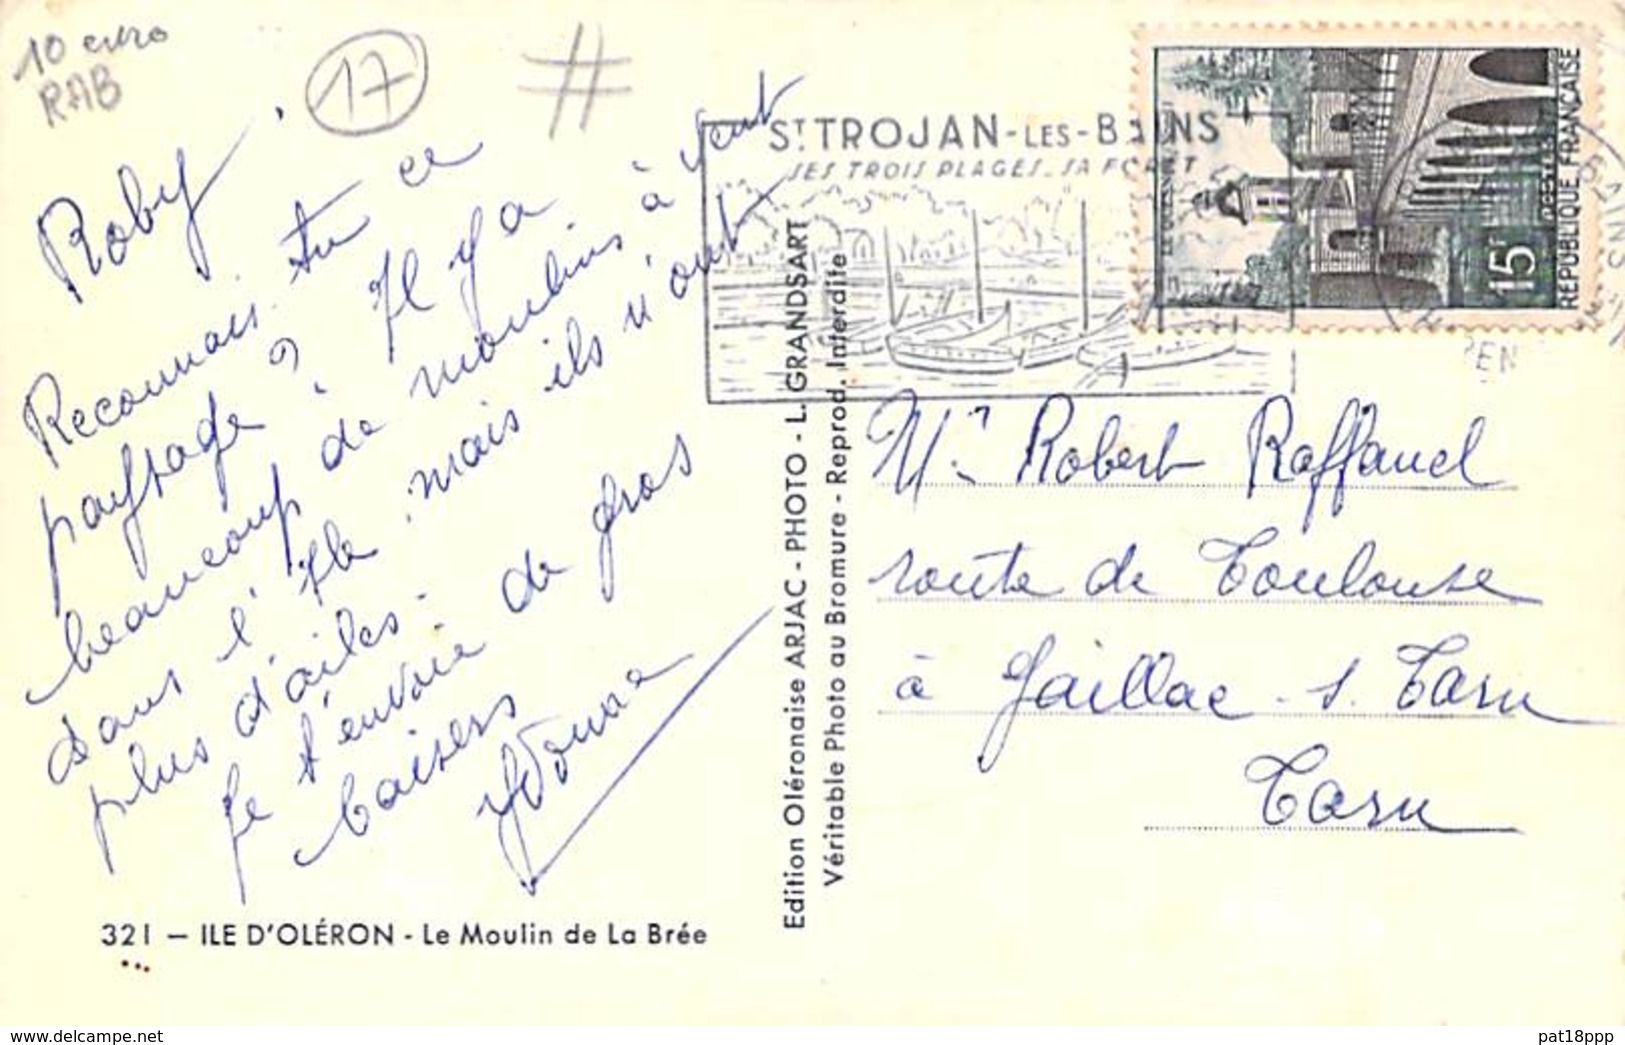 ** Lot de 10 cartes ** 17 - ILE D'OLERON : Cartes diversifiées - CPSM dentelée noir blanc format CPA - Charente Maritime